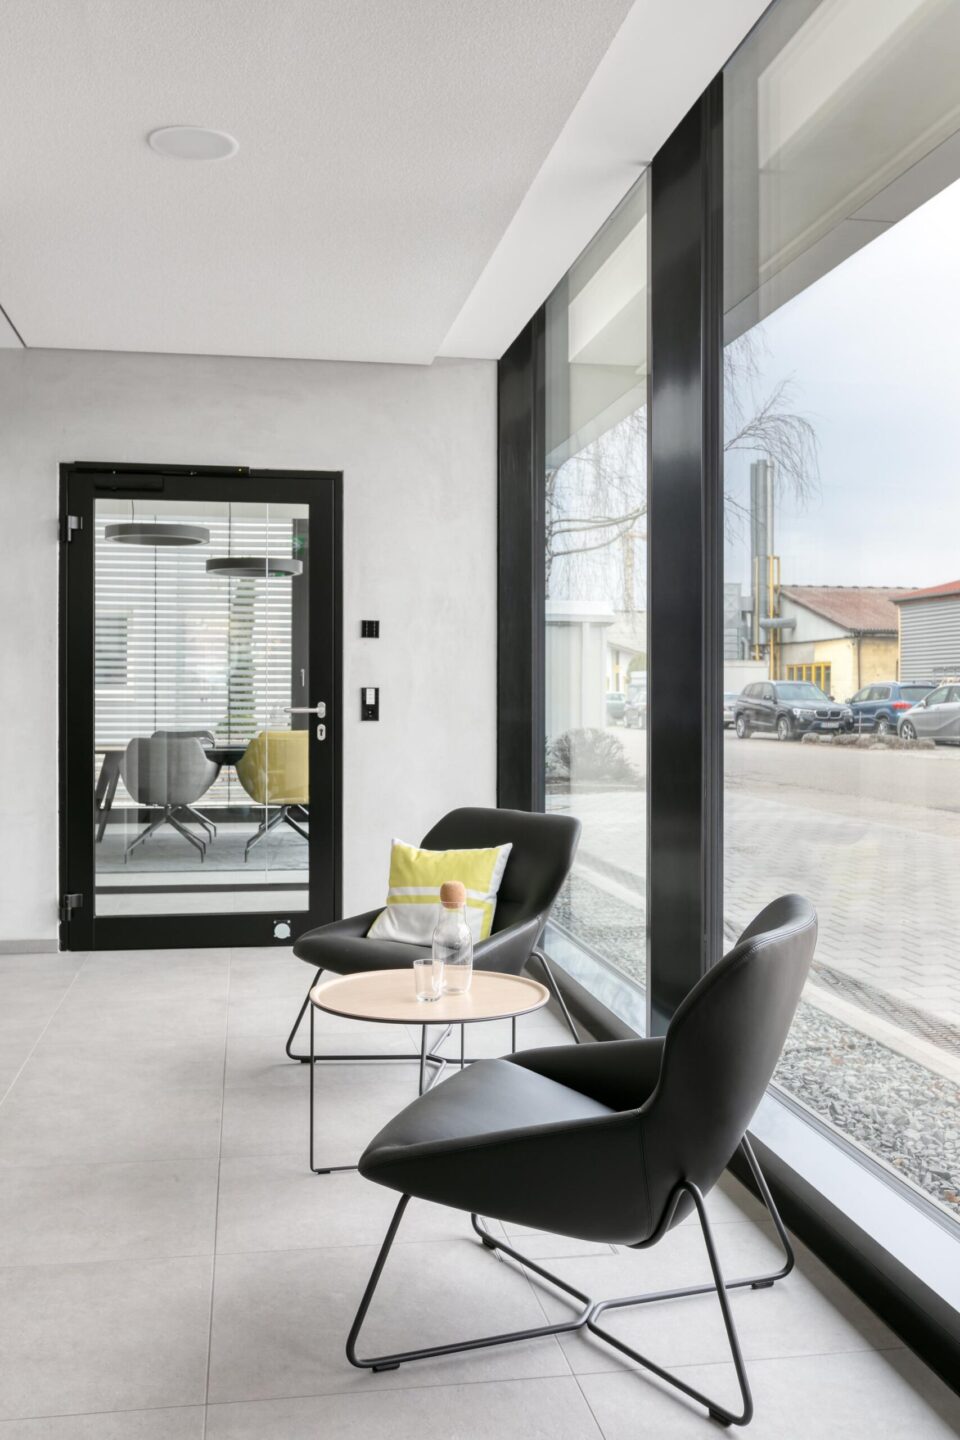 Hoch Baumaschinen │ modern meeting rooms │ modern open-space offices.